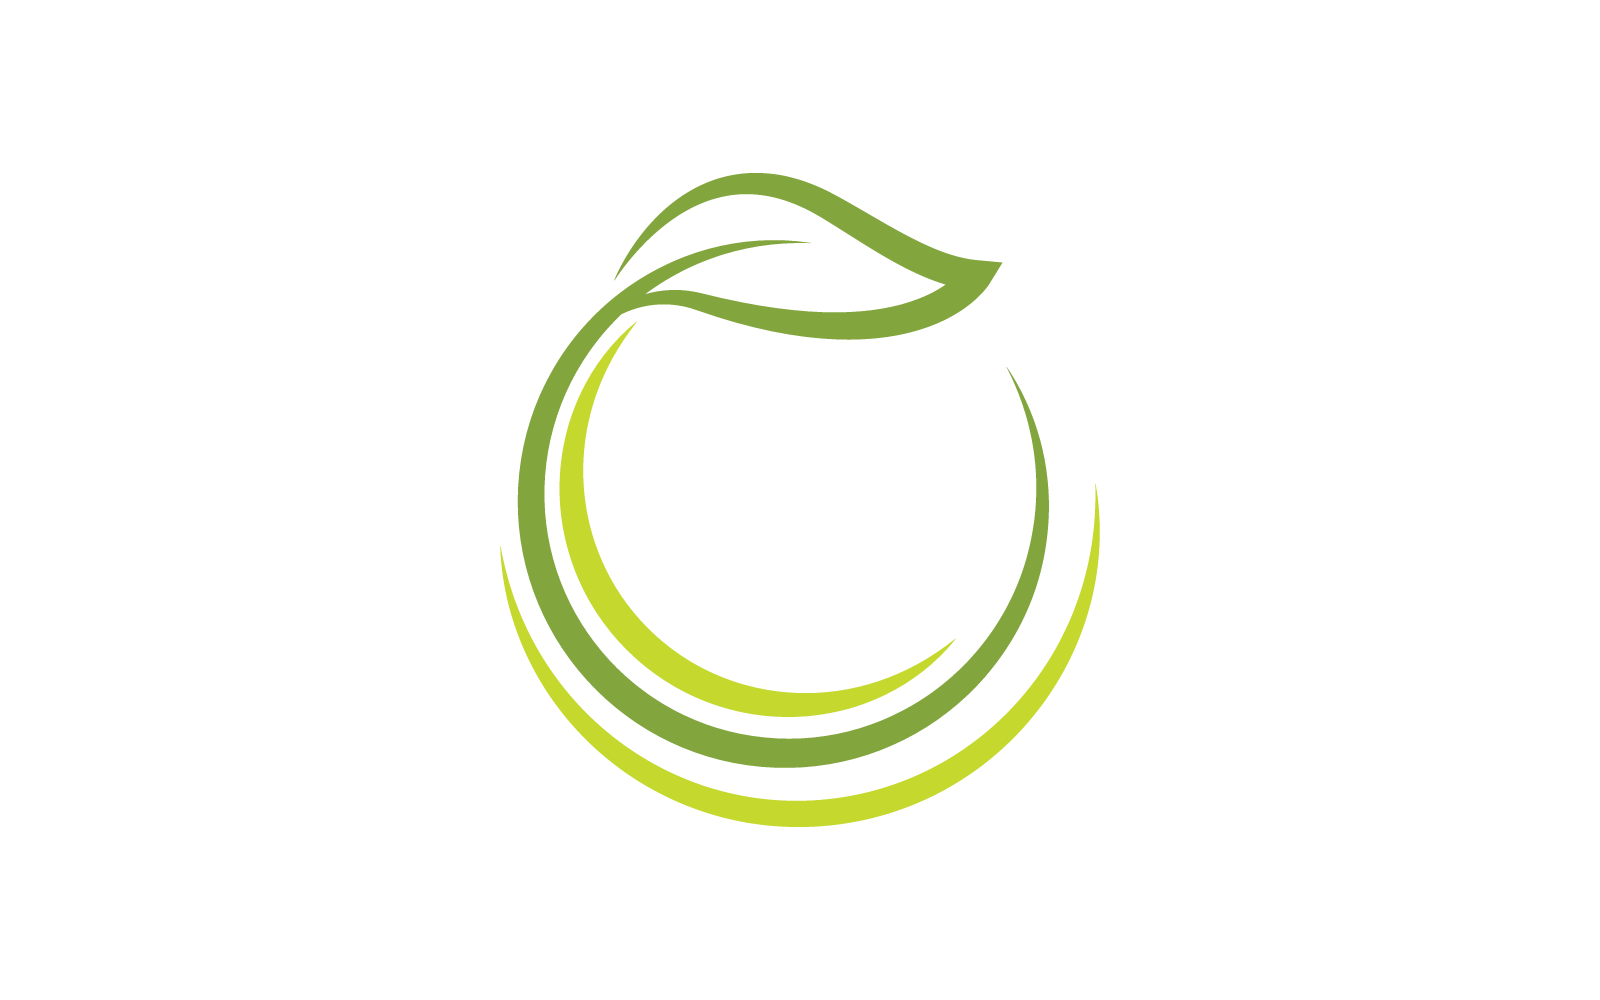 Green leaf illustration vevtor nature logo design